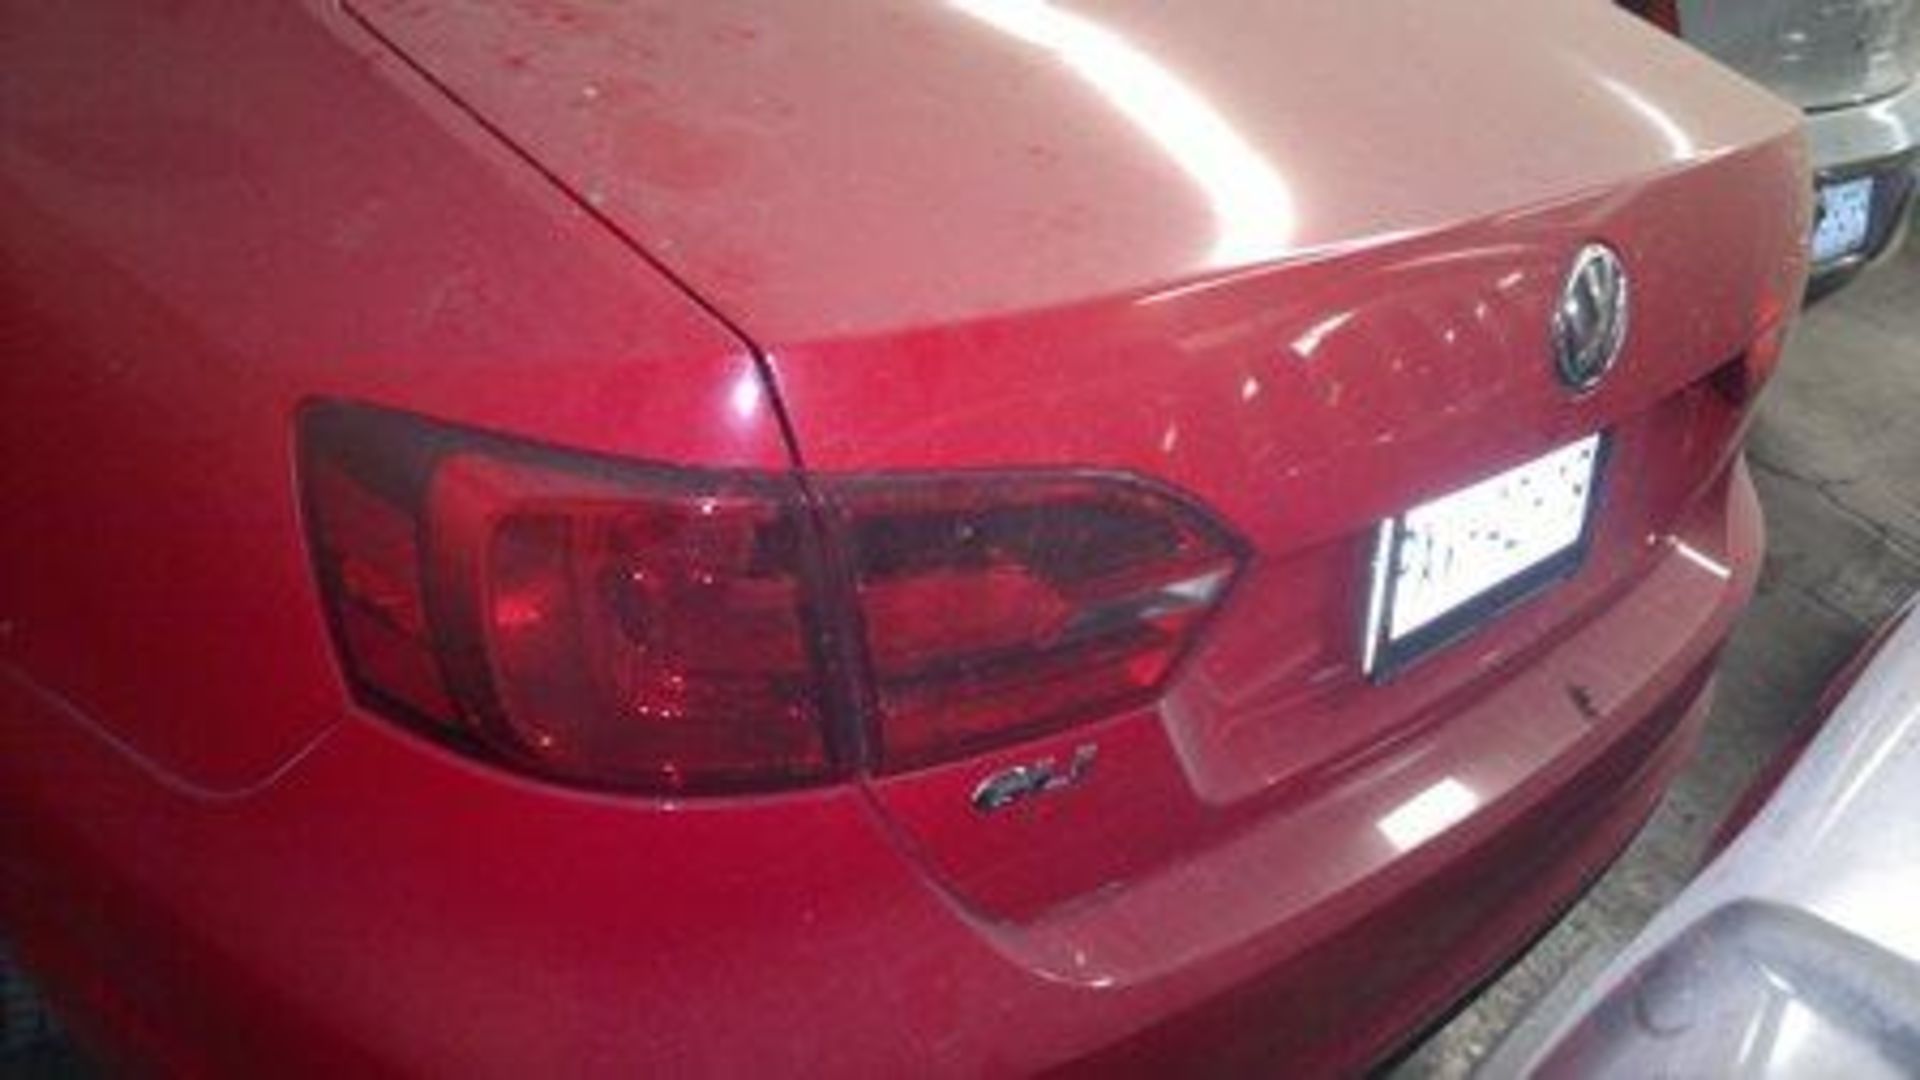 Vehículo Marca Volkswagen Jetta, Modelo 2013, Color Rojo, Located In: Estado De Mexico, Deposit - Bild 5 aus 10